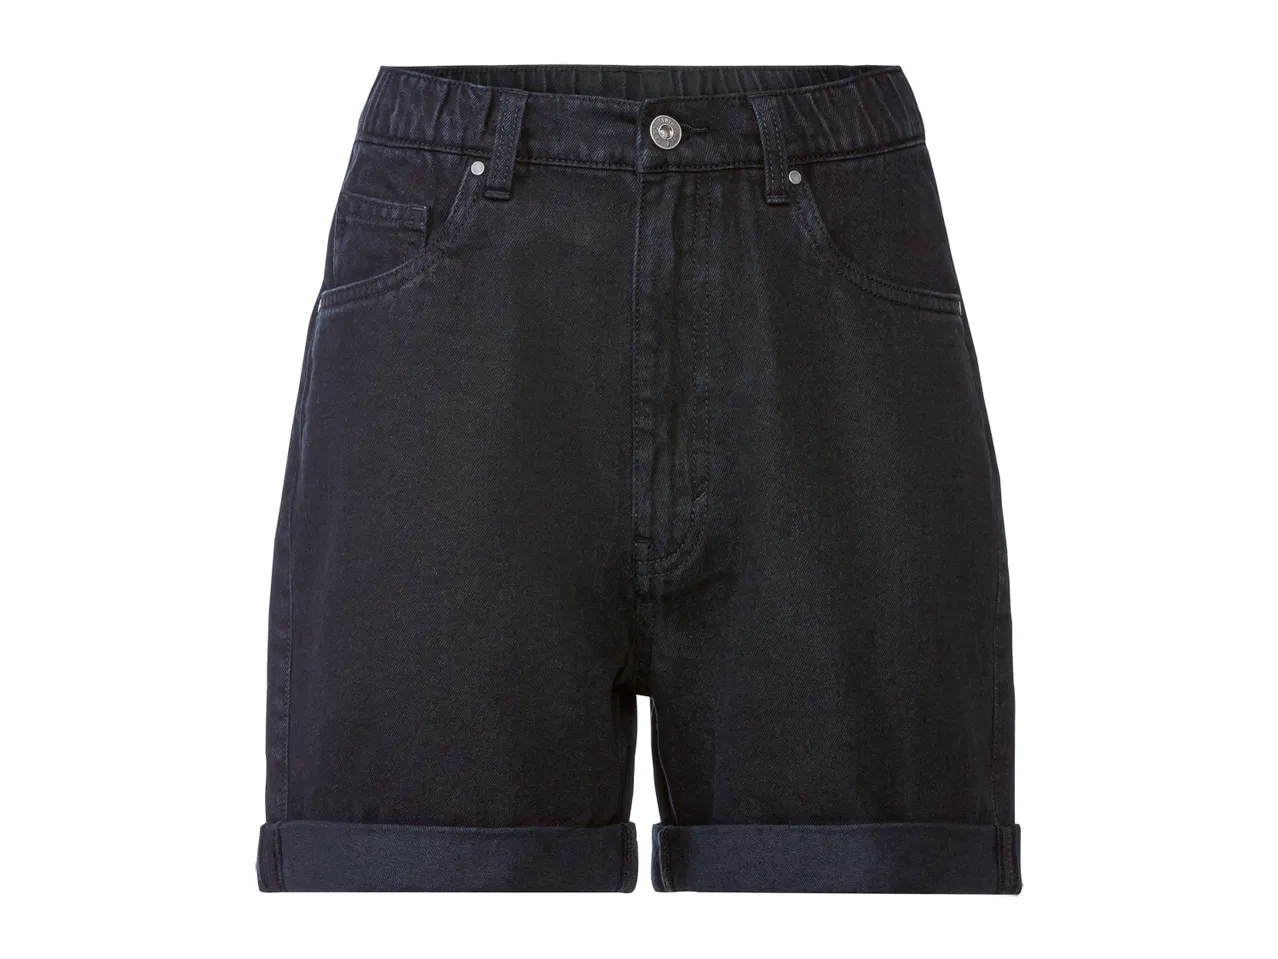 Shorts in jeans da donna , prezzo 7.99 EUR 
Shorts in jeans da donna Misure: 38-48 ...